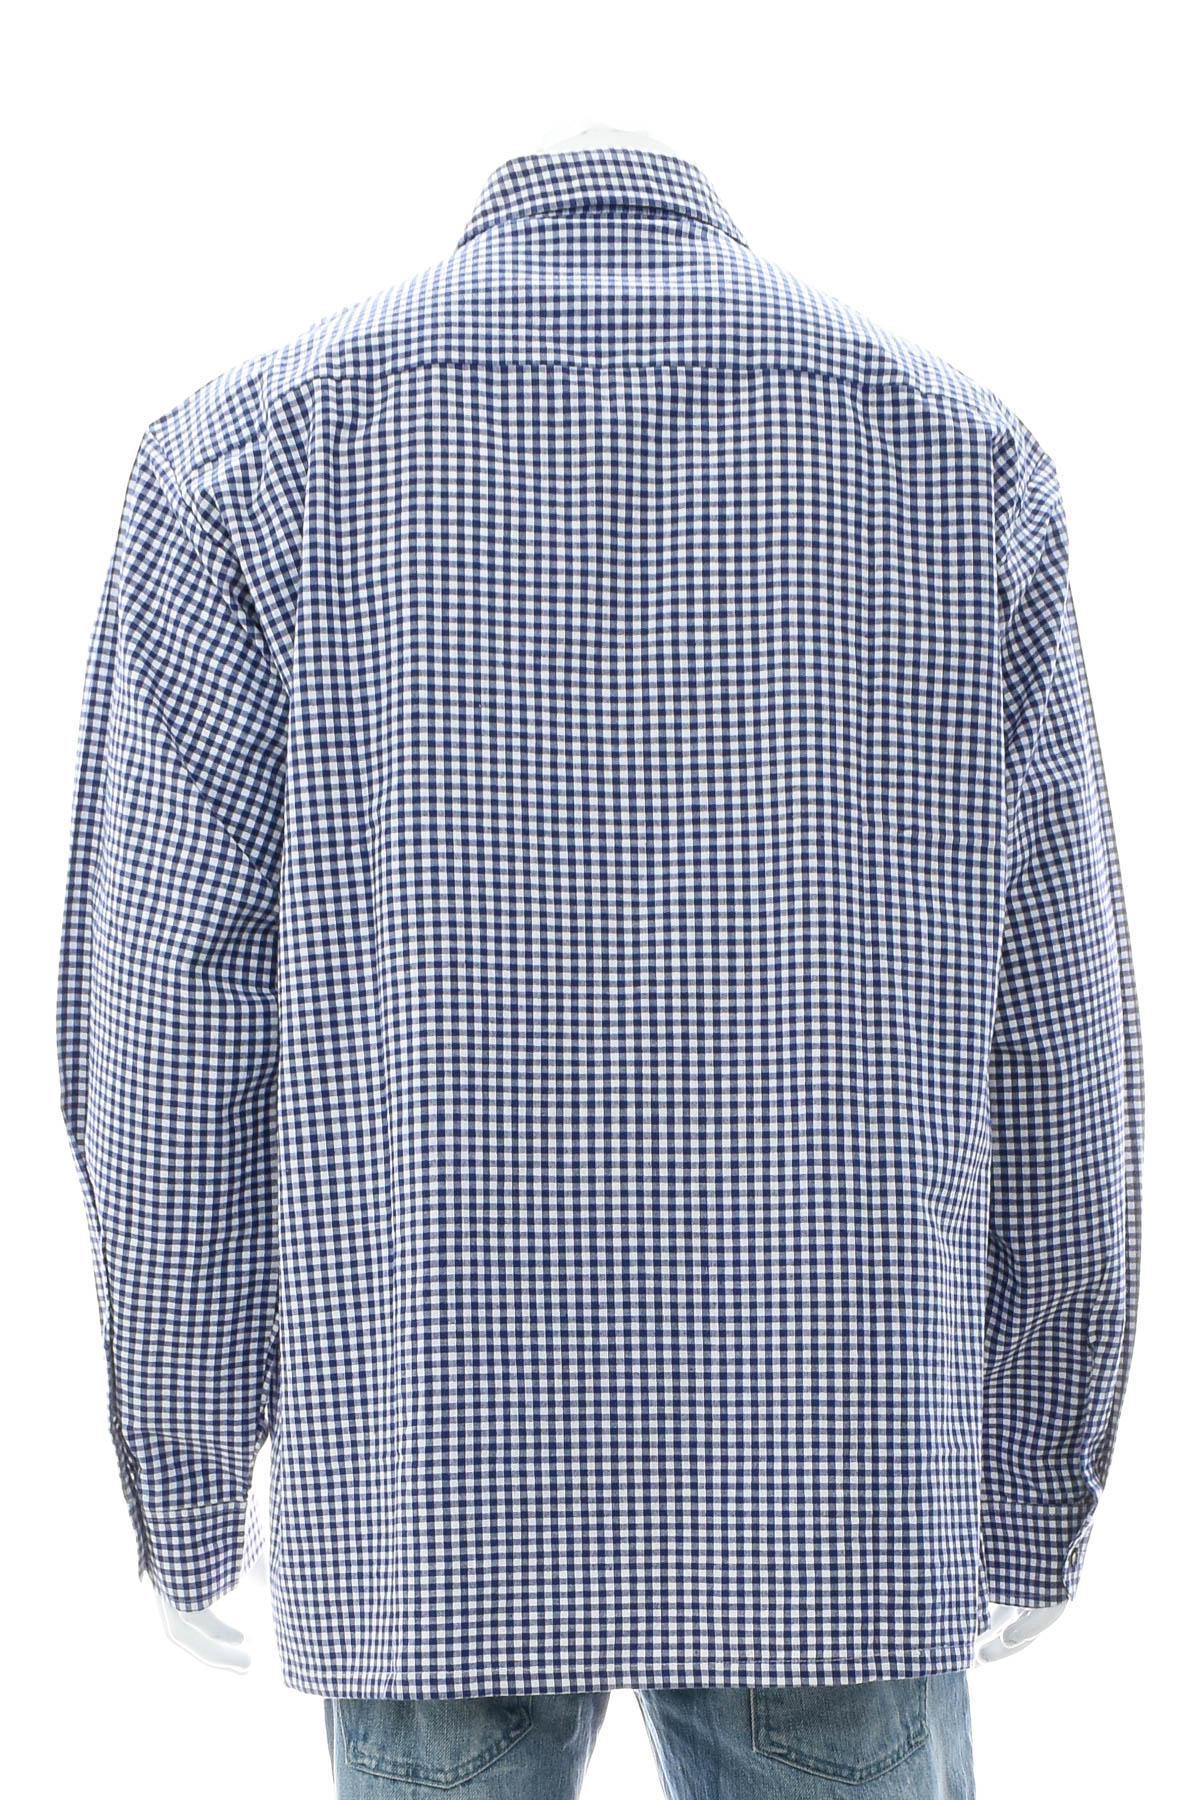 Men's shirt - Usar-Grachten - 1